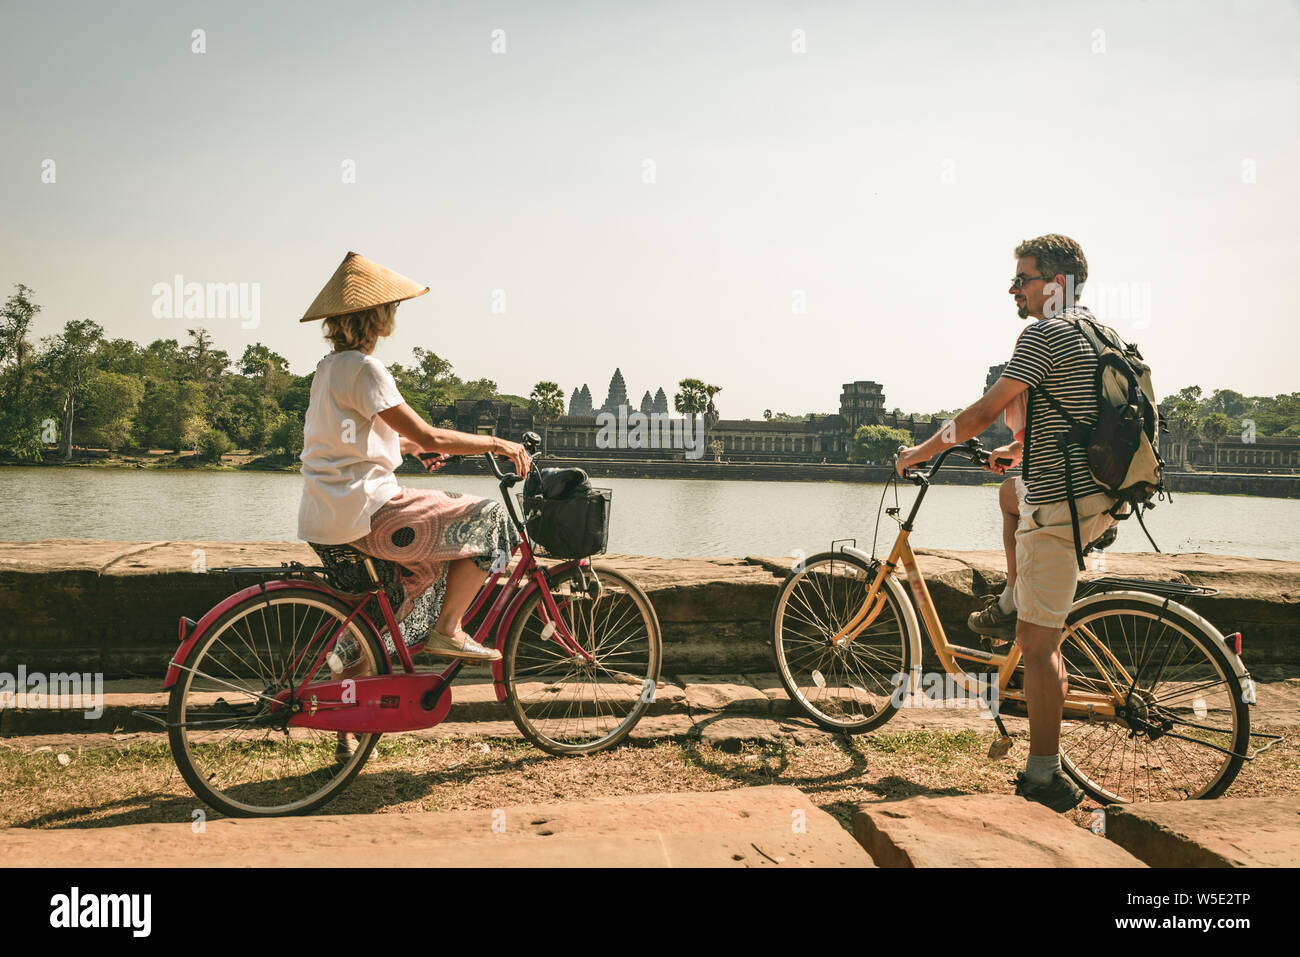 Touristische paar Radfahren im Tempel Angkor, Kambodscha. Angkor Wat Hauptfassade auf Wasser Teich wider. Umweltfreundliche Tourismus reisen. Getönt Stockfoto